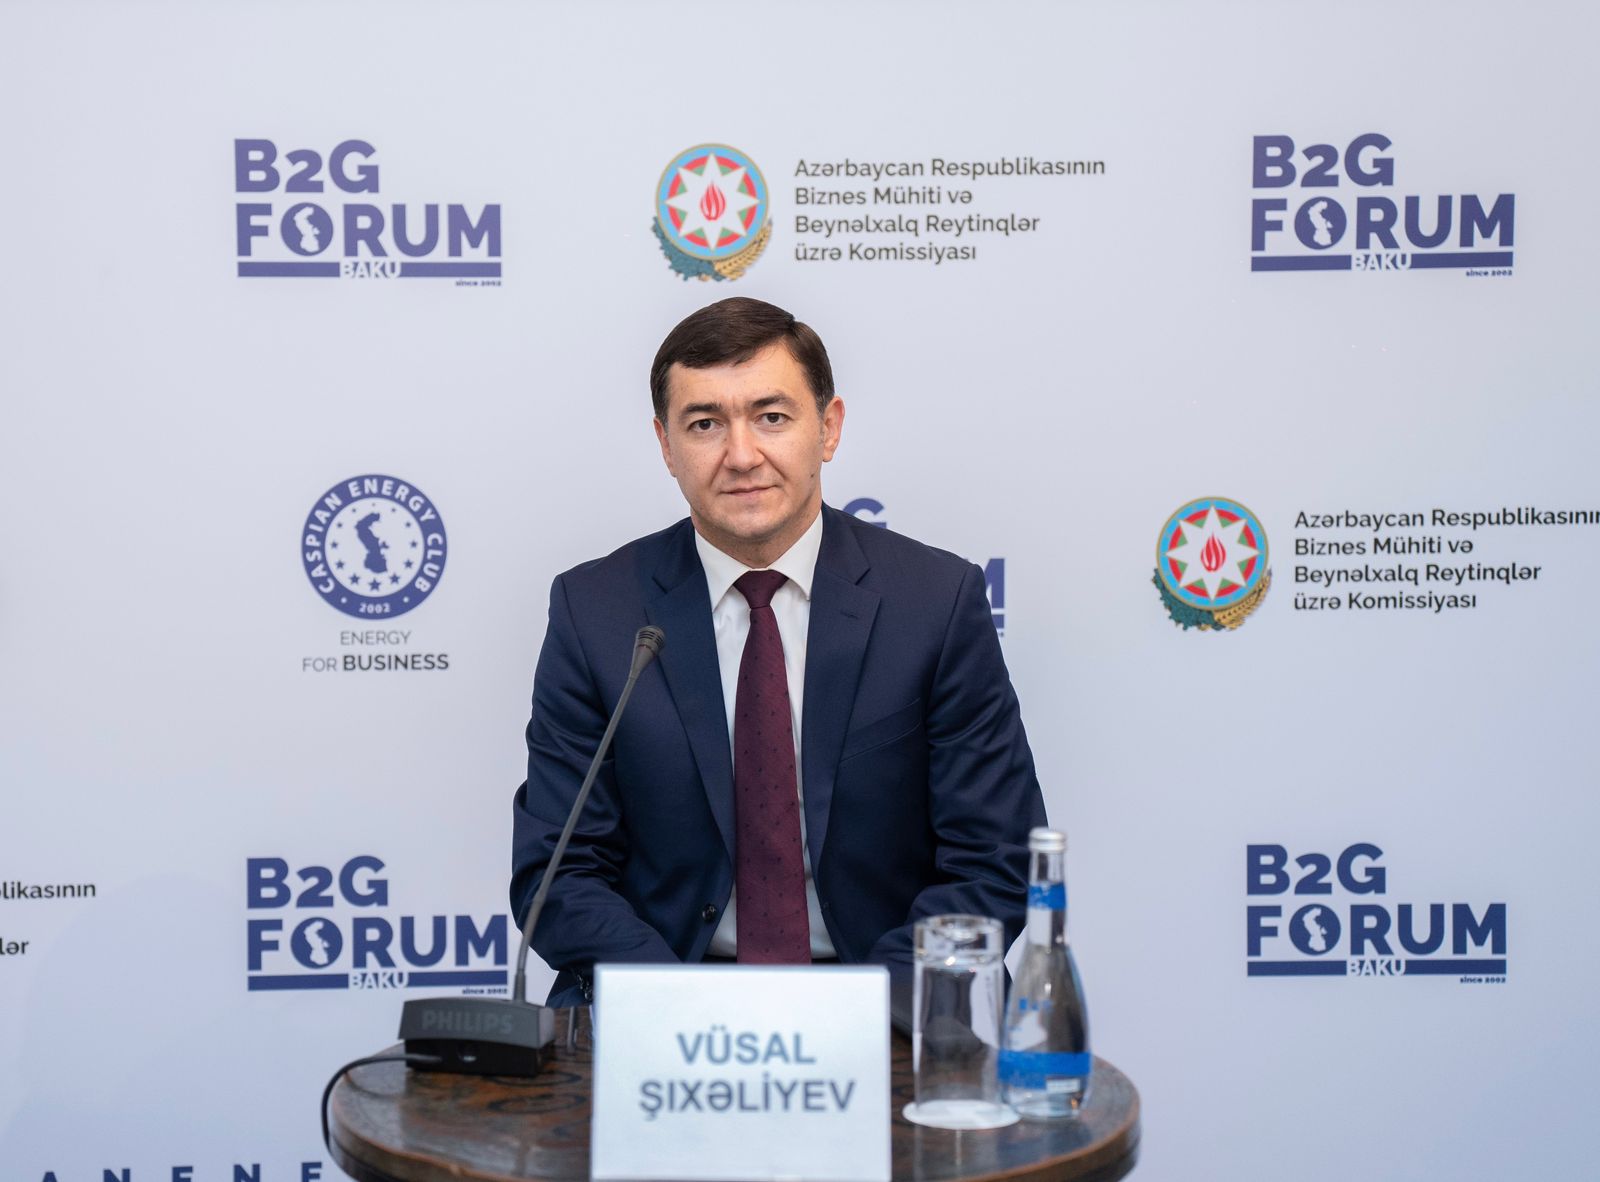 Вусал Шихалиев: Будет повышен уровень цифровизации бизнес-услуг